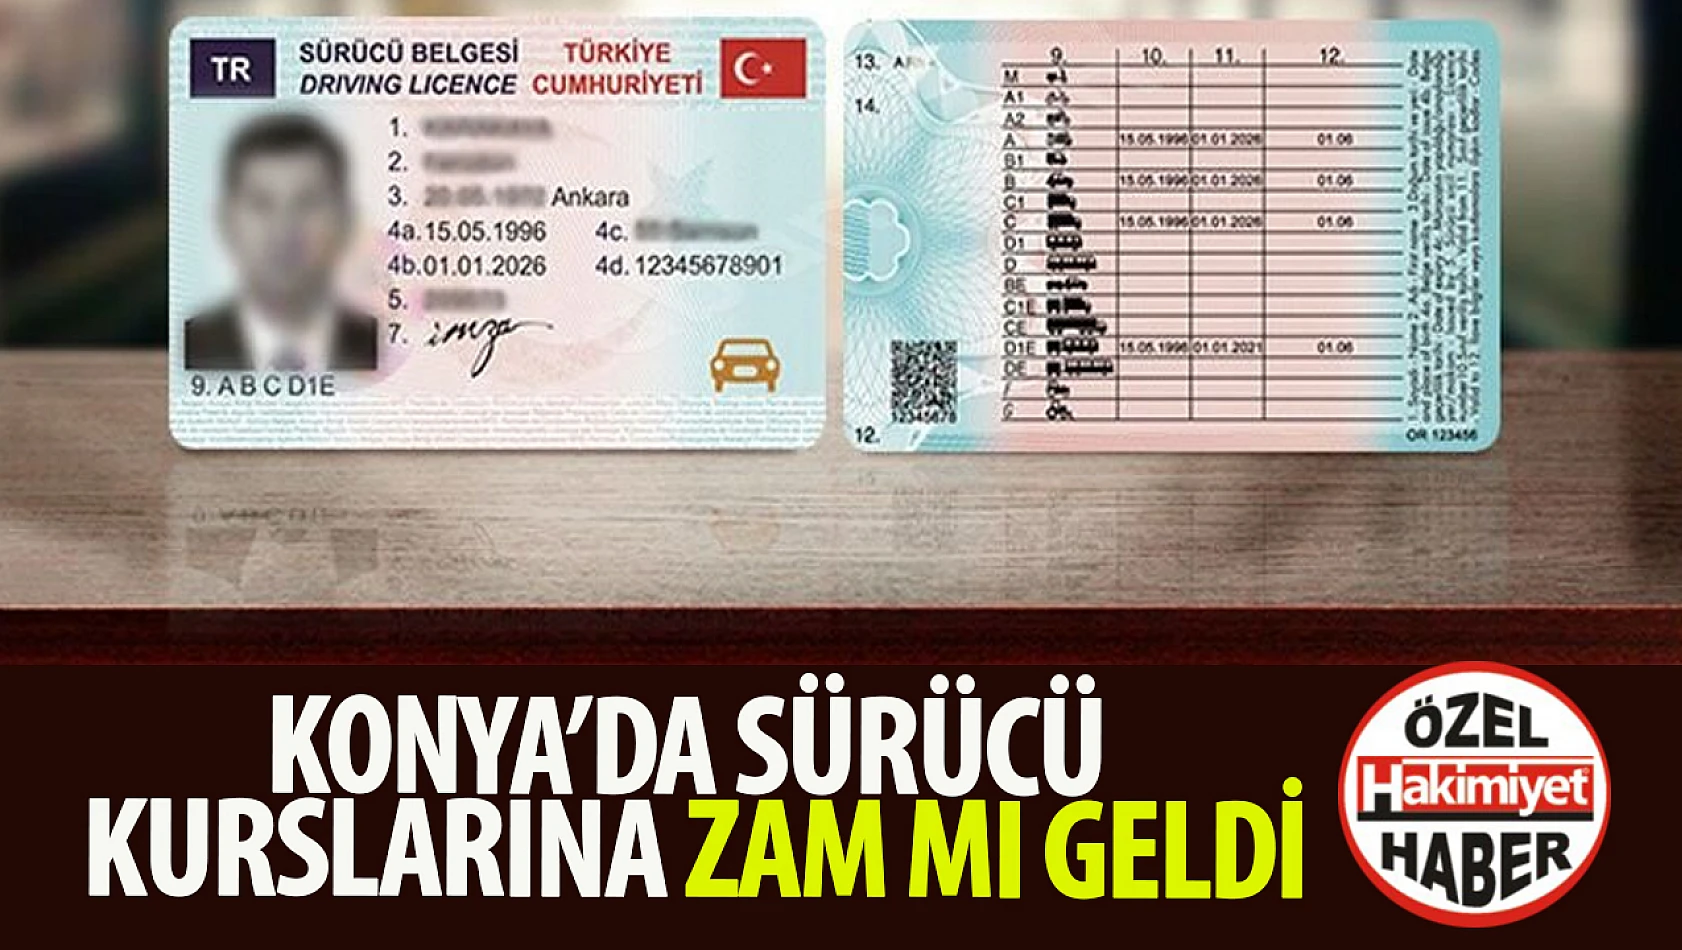 Konya'da ehliyet kurs fiyatları zamlandı mı? Kurs ücretleri ne durumda? 